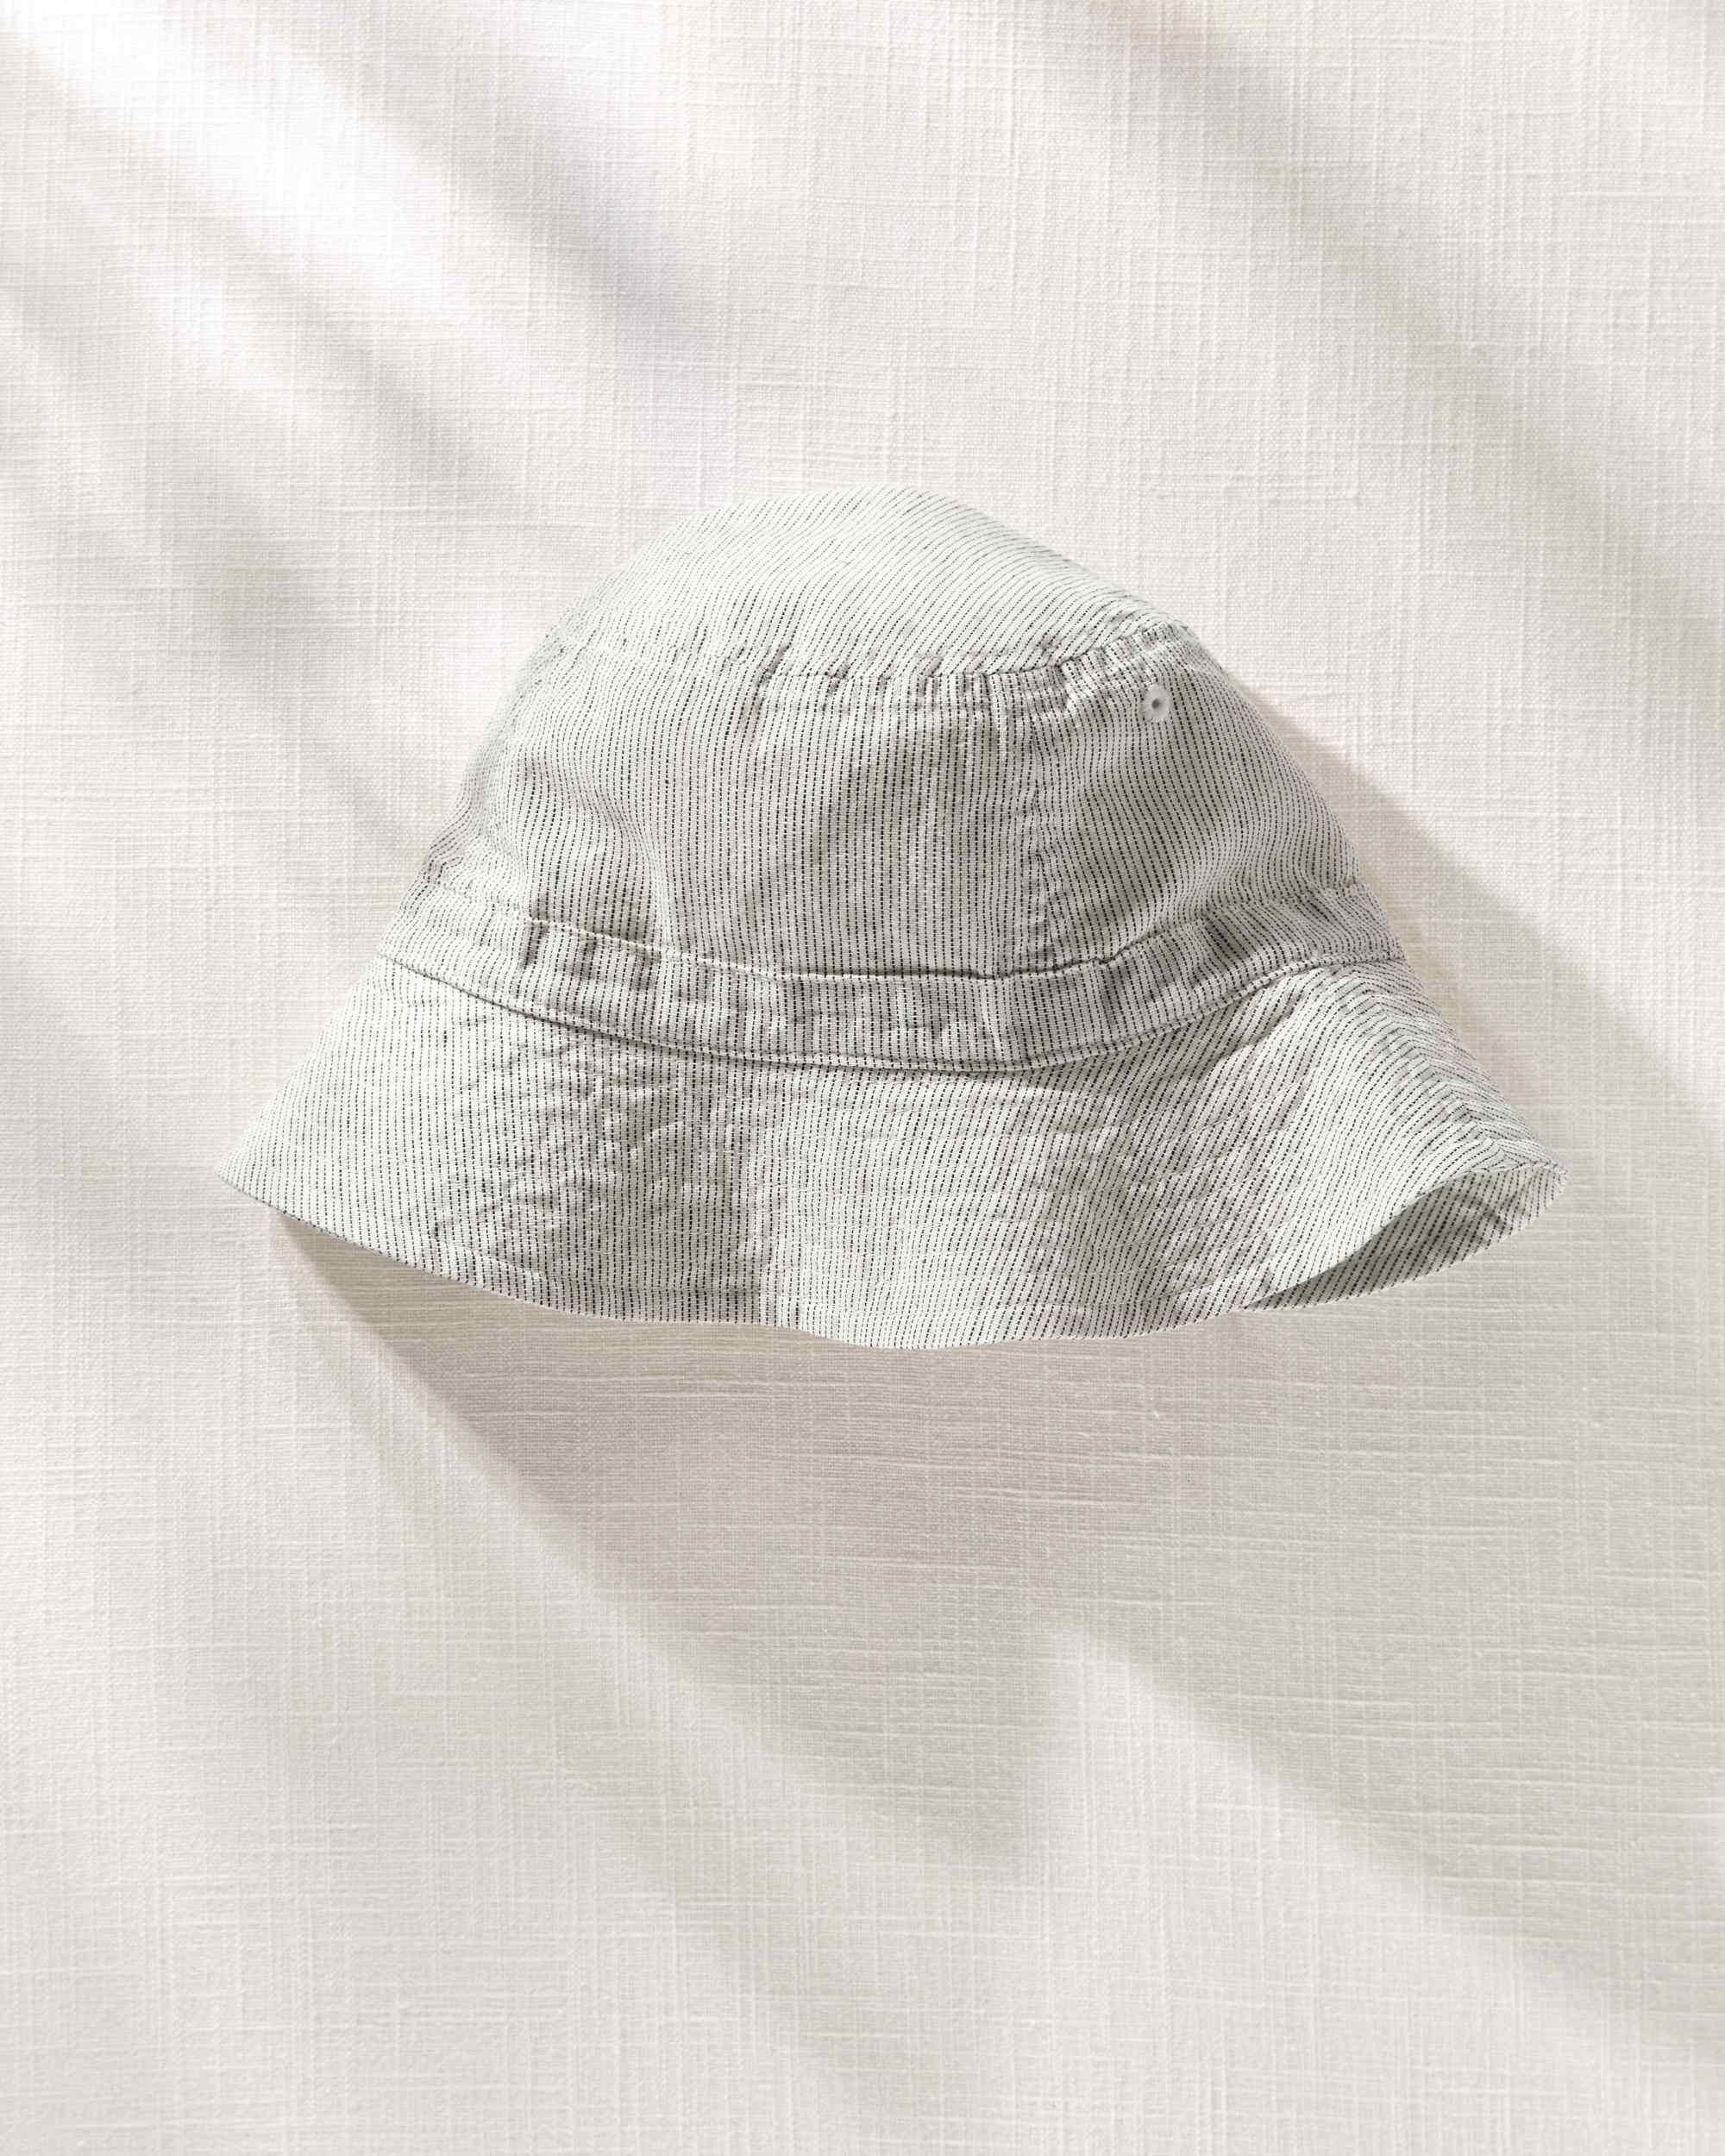 Toddler Hilary Duff Linen Bucket Hat | Carter's